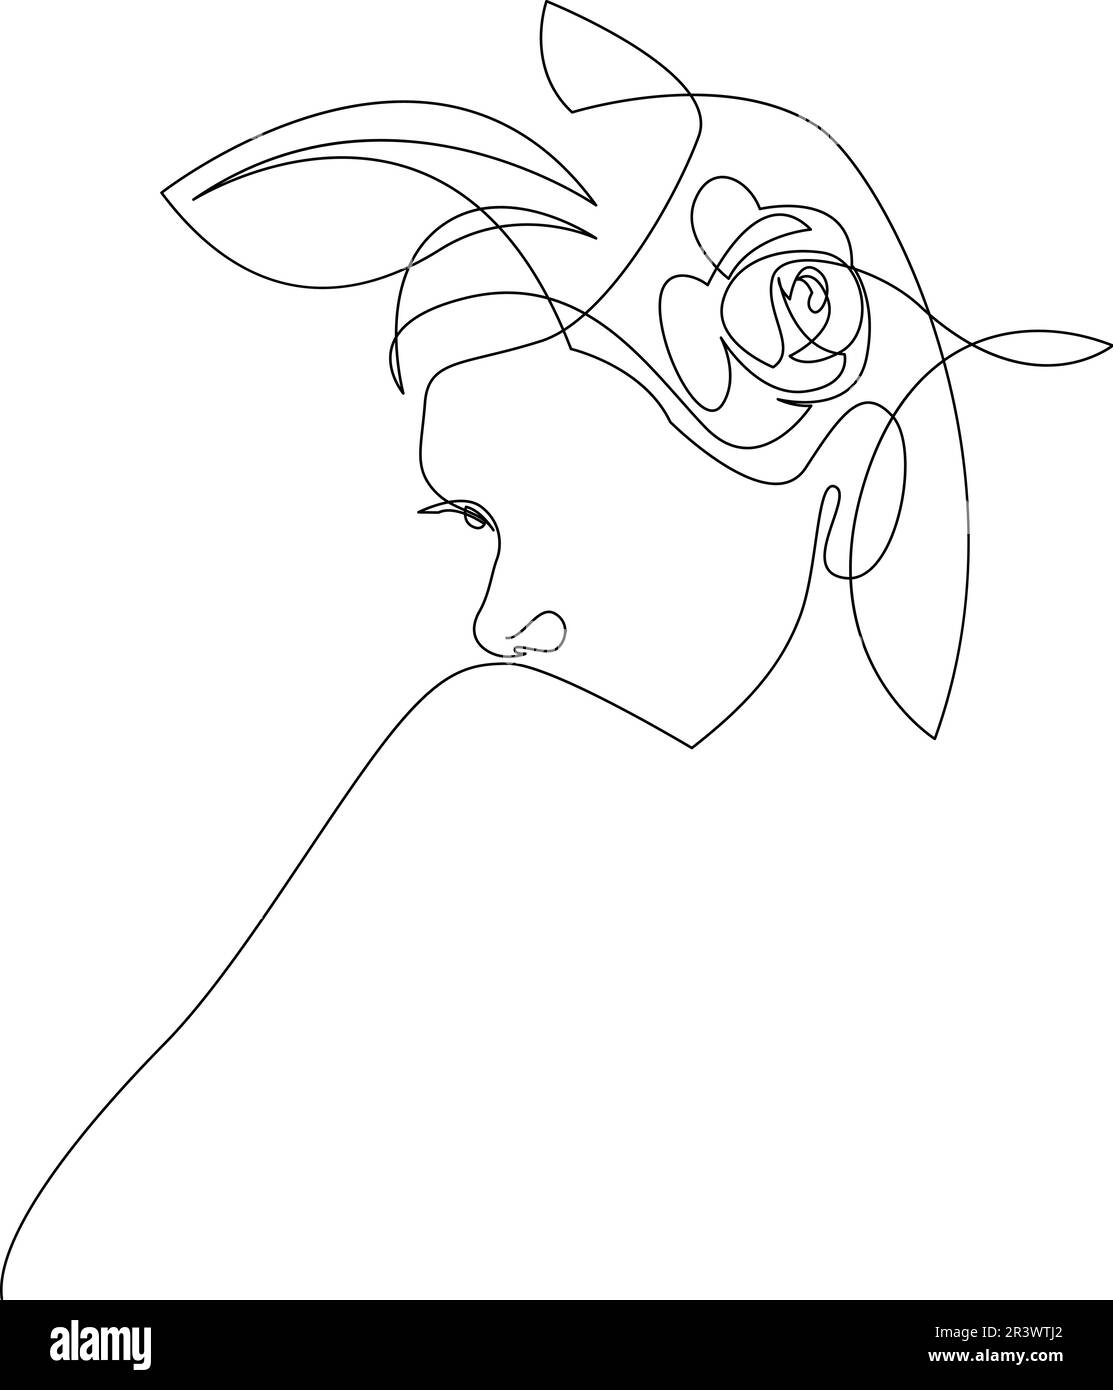 Weiblicher Kopf mit Blumenillustrierung. Von Hand gezeichnete durchgehende Vektorzeichnung. One Line Art Stock Vektor